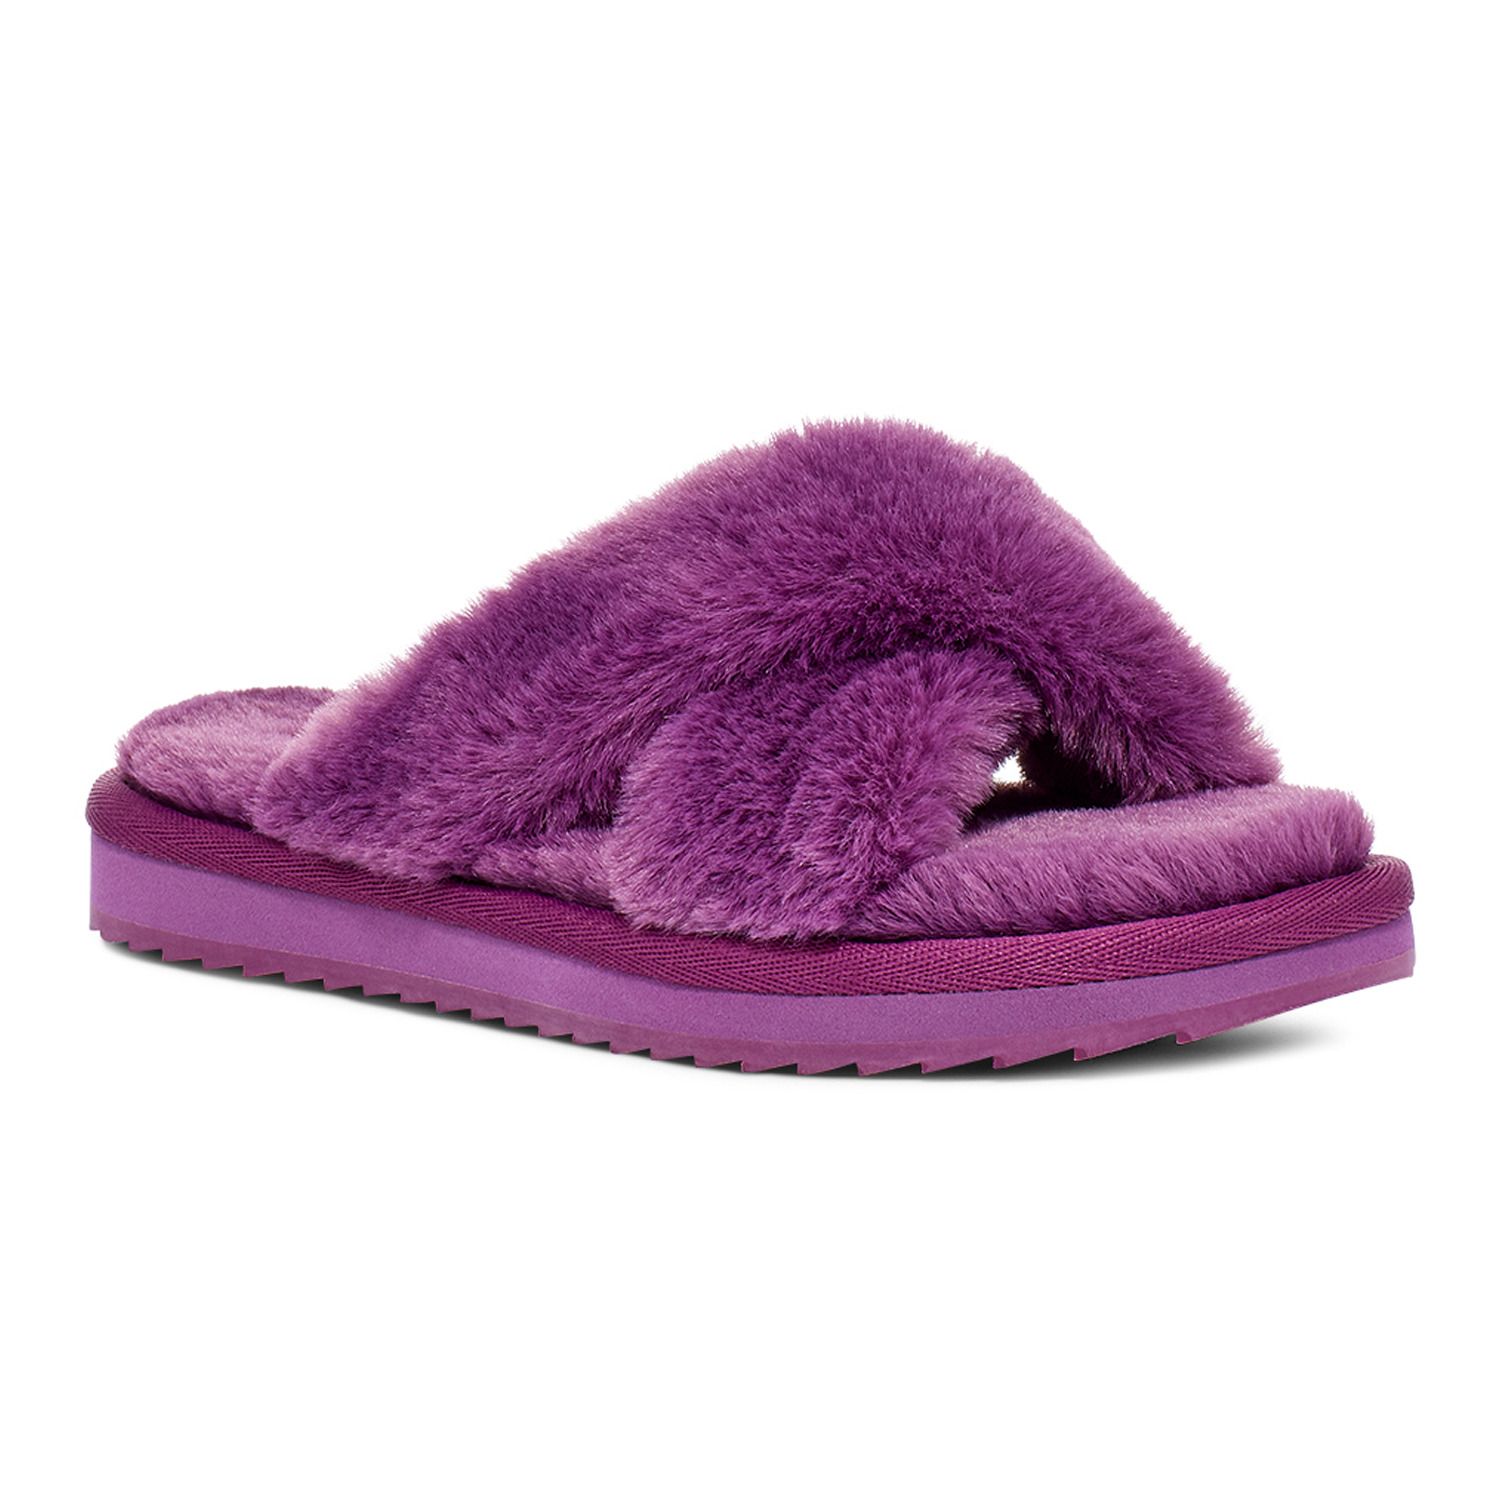 koolaburra ballia slippers